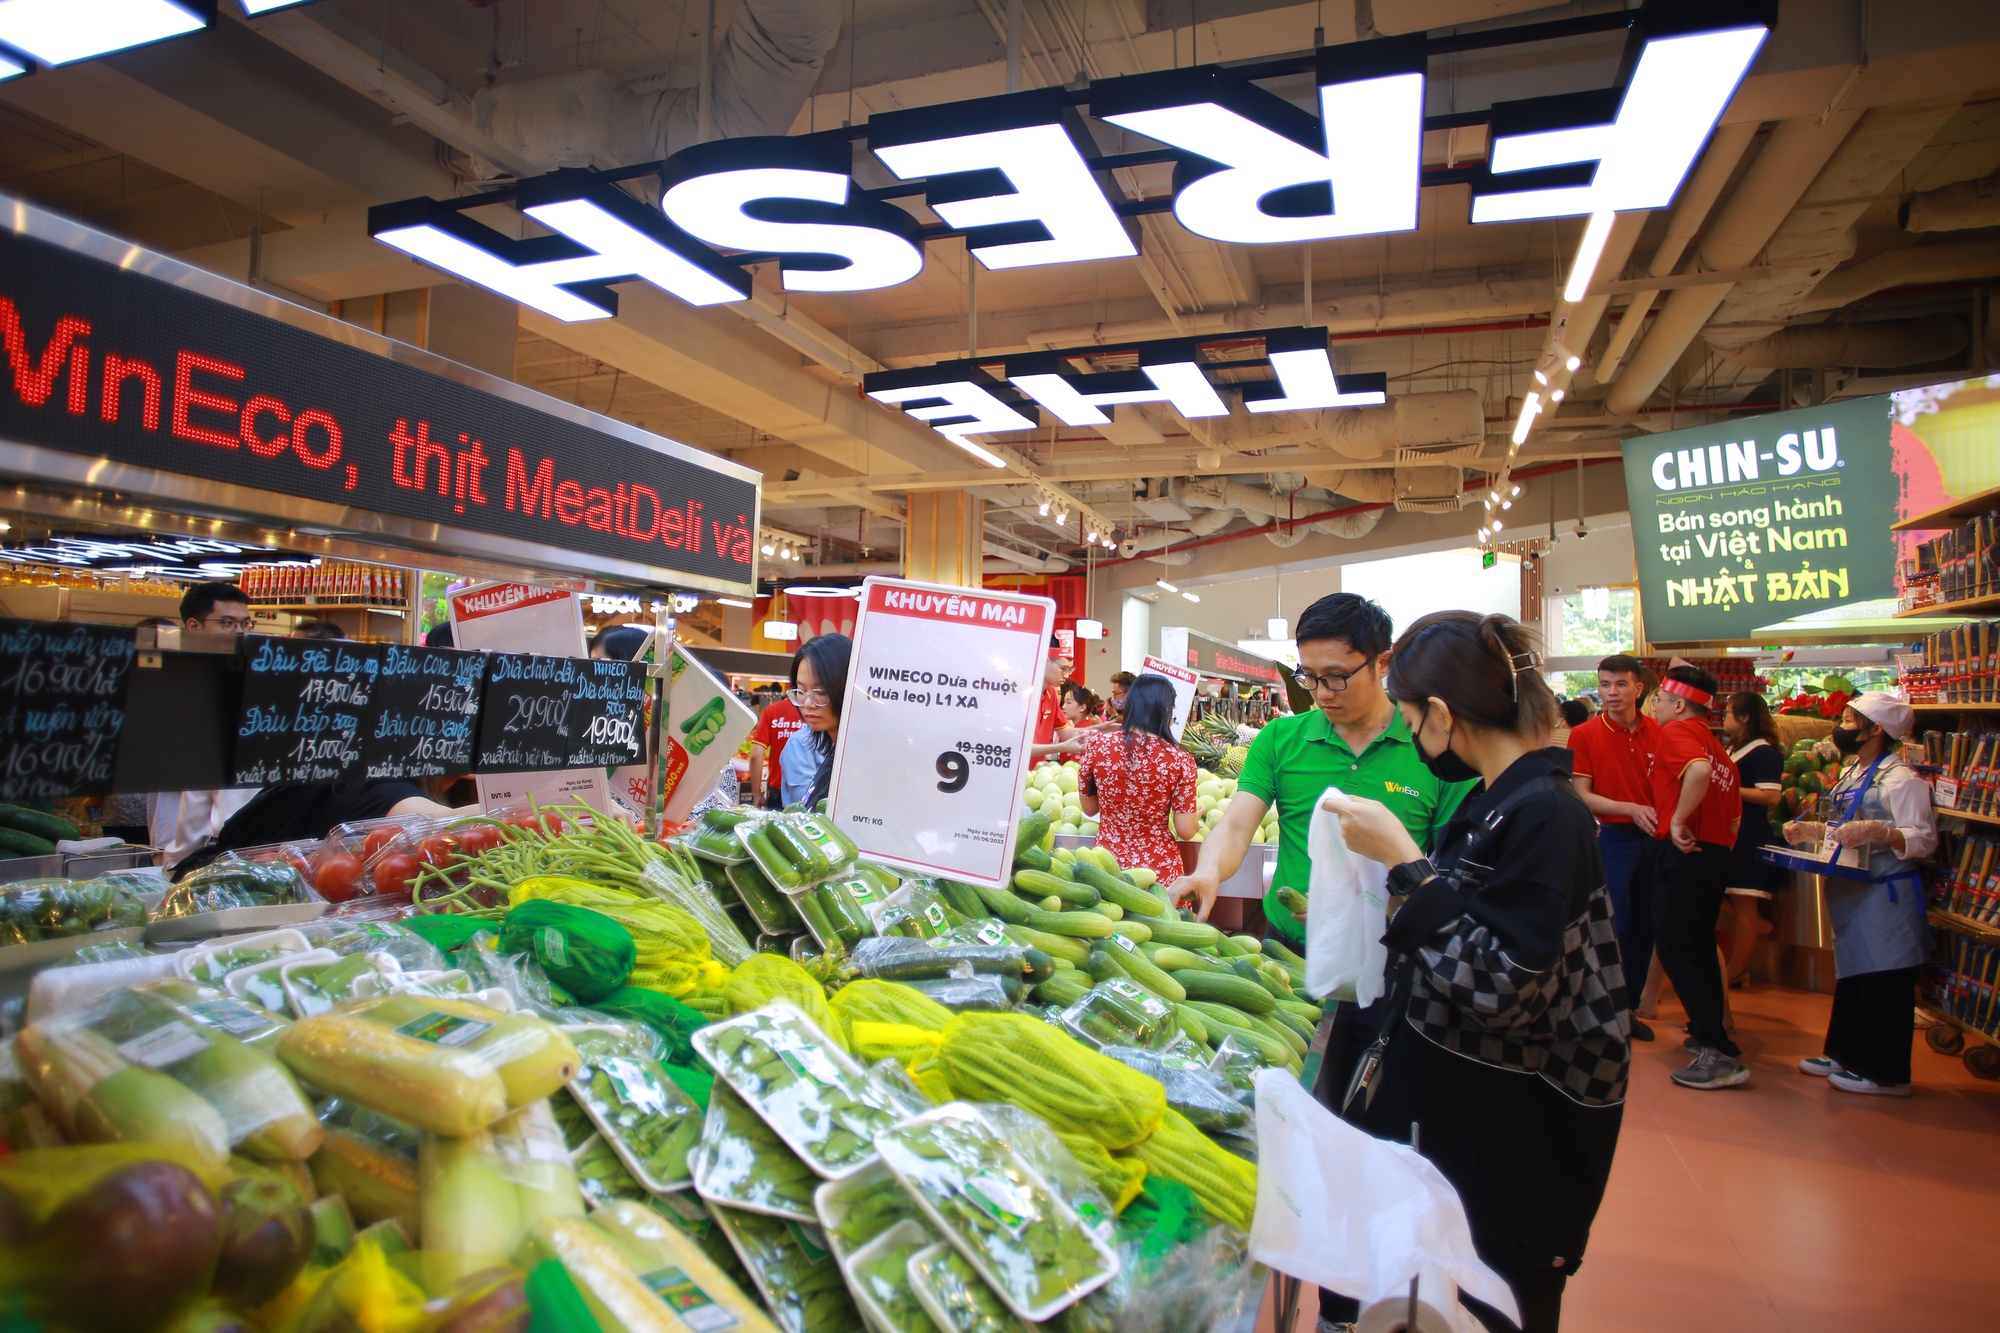 Đầu tư khủng, WinCommerce nâng cấp siêu thị WinMart Thăng Long theo mô hình trải nghiệm mới - Ảnh 5.